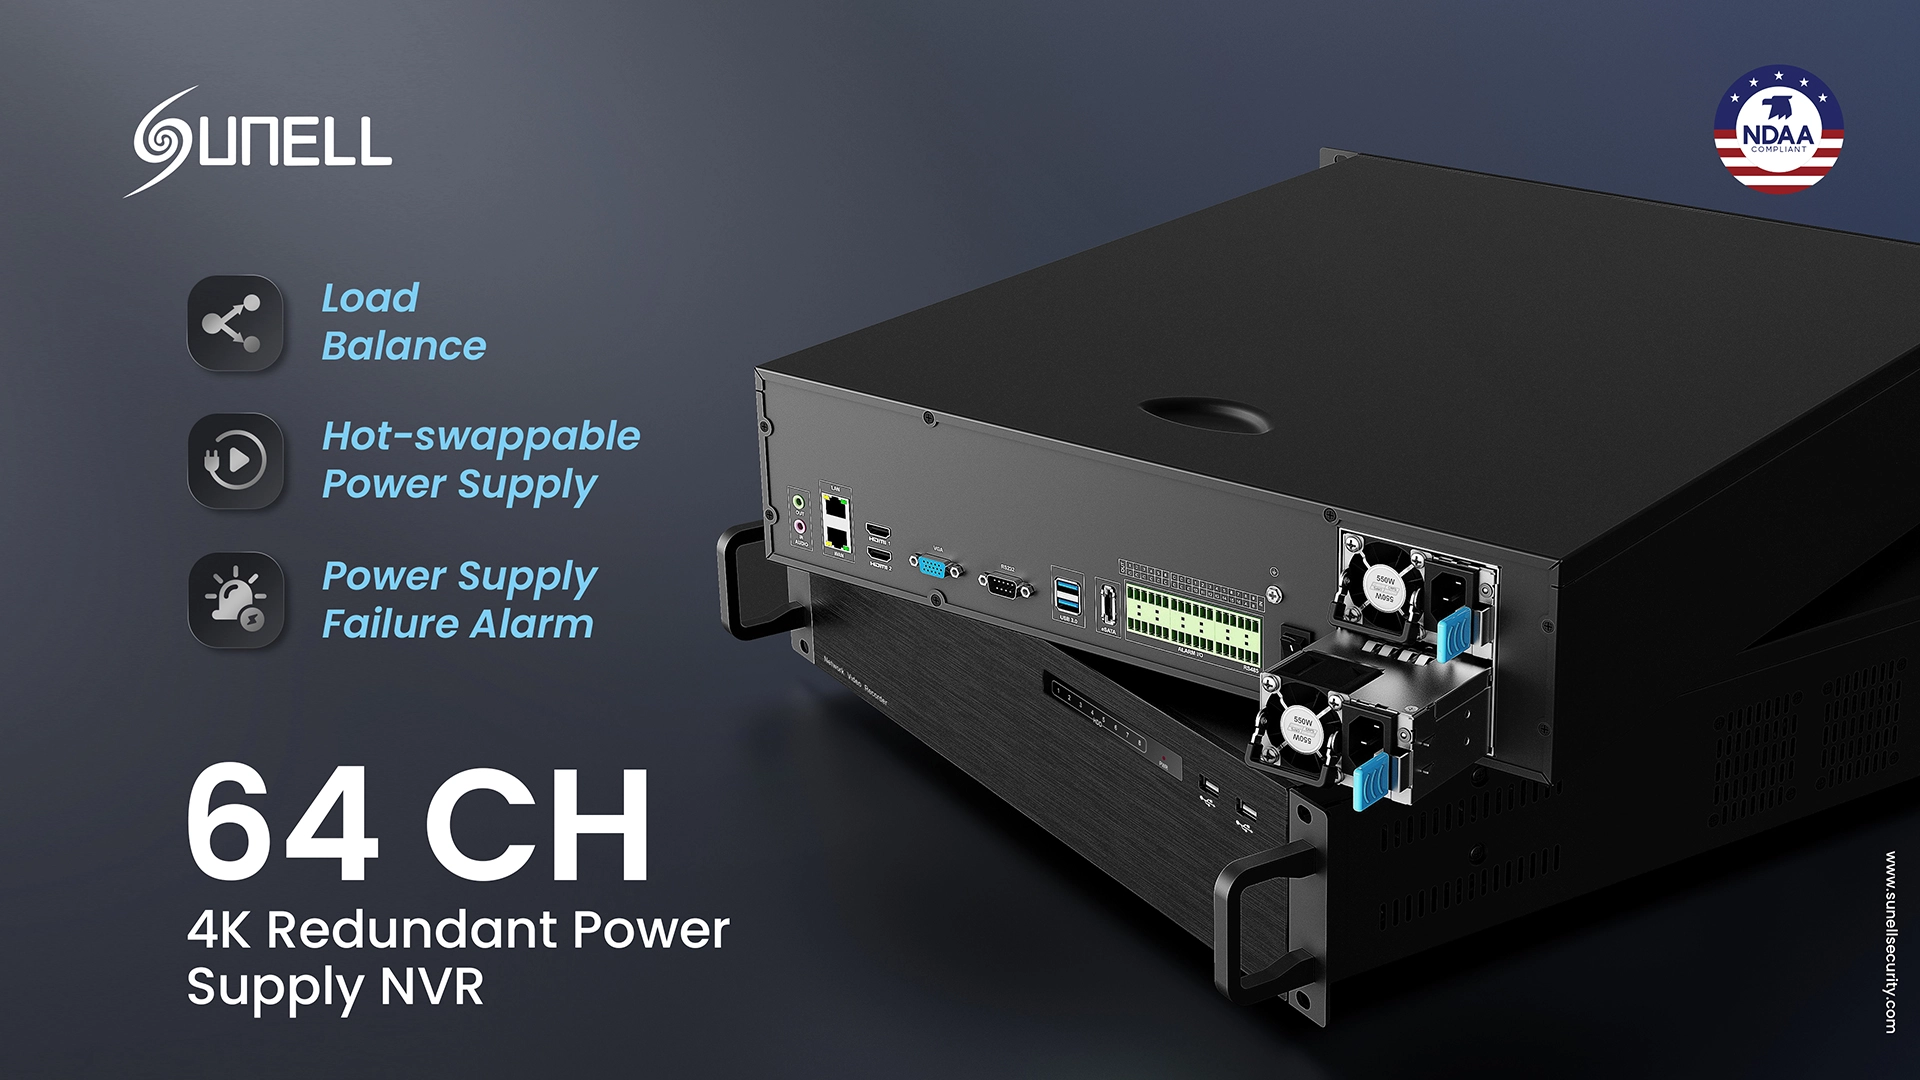 Sunell lance le nouveau NVR d’alimentation redondante 4K à 64 canaux pour assurer une surveillance stable